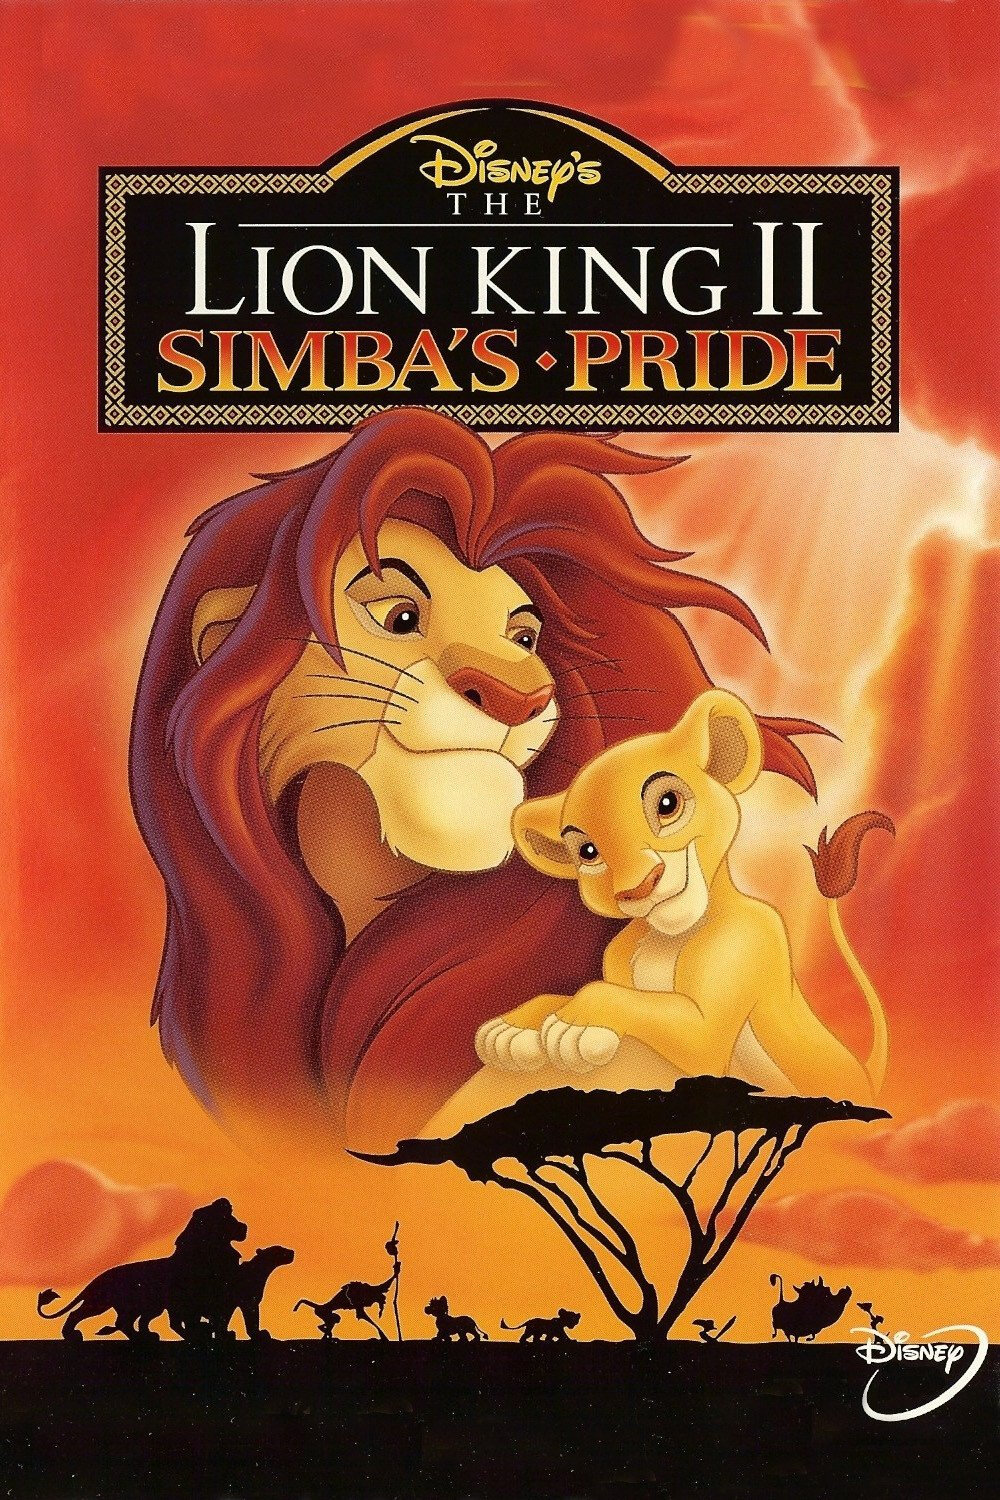 《狮子王》讲述了小狮子辛巴在众多热情的朋友的陪伴下,不但经历了